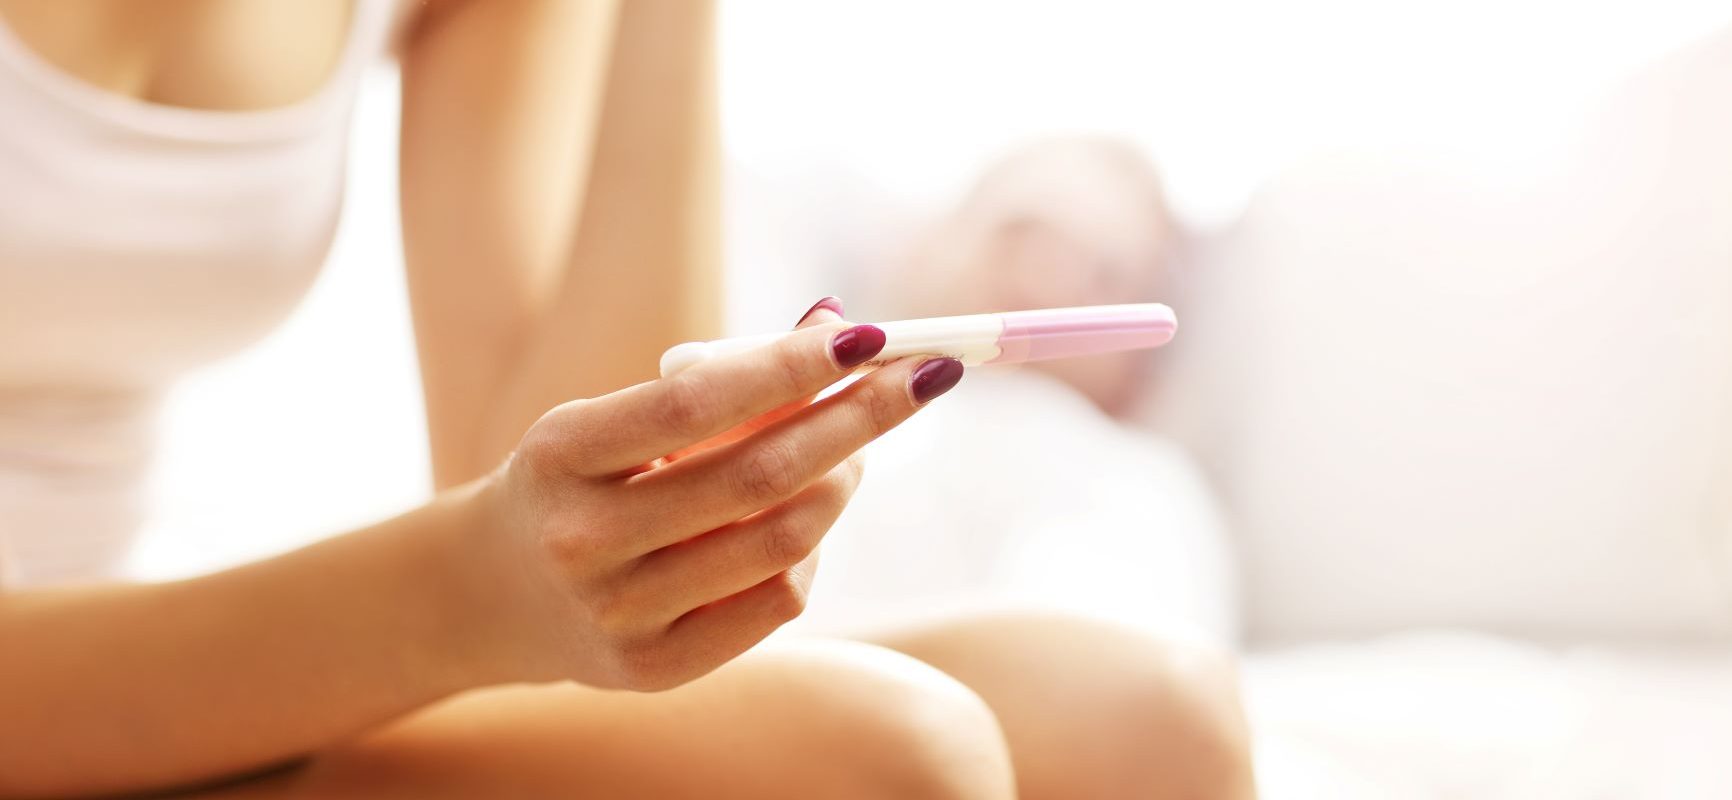 Kiedy zrobić test ciążowy, aby jego wynik był wiarygodny? Kobieta w białym topie i majtkach siedzi na łóżku i czeka na wynik testu ciążowego.